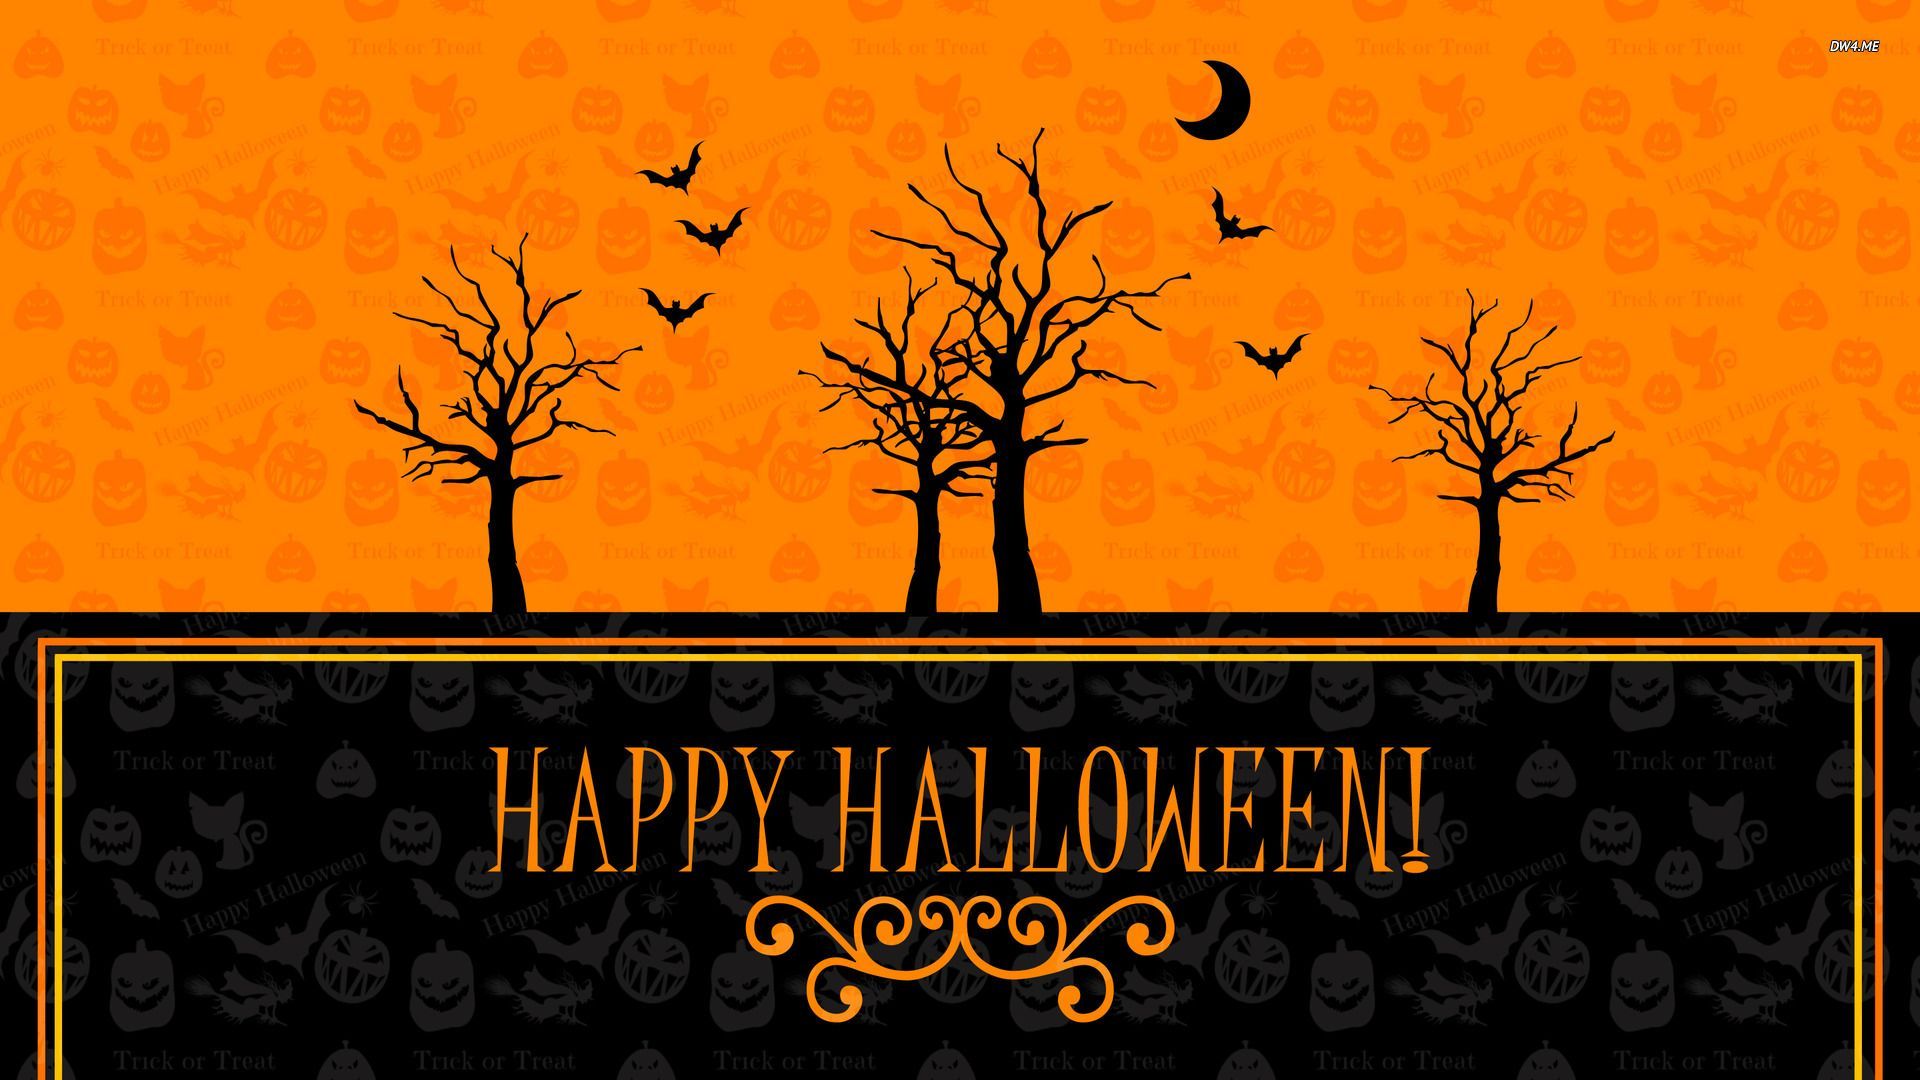 Happy Halloween Wallpaper Full HD. Scary halloween picture, Halloween wallpaper, Halloween desktop wallpaper